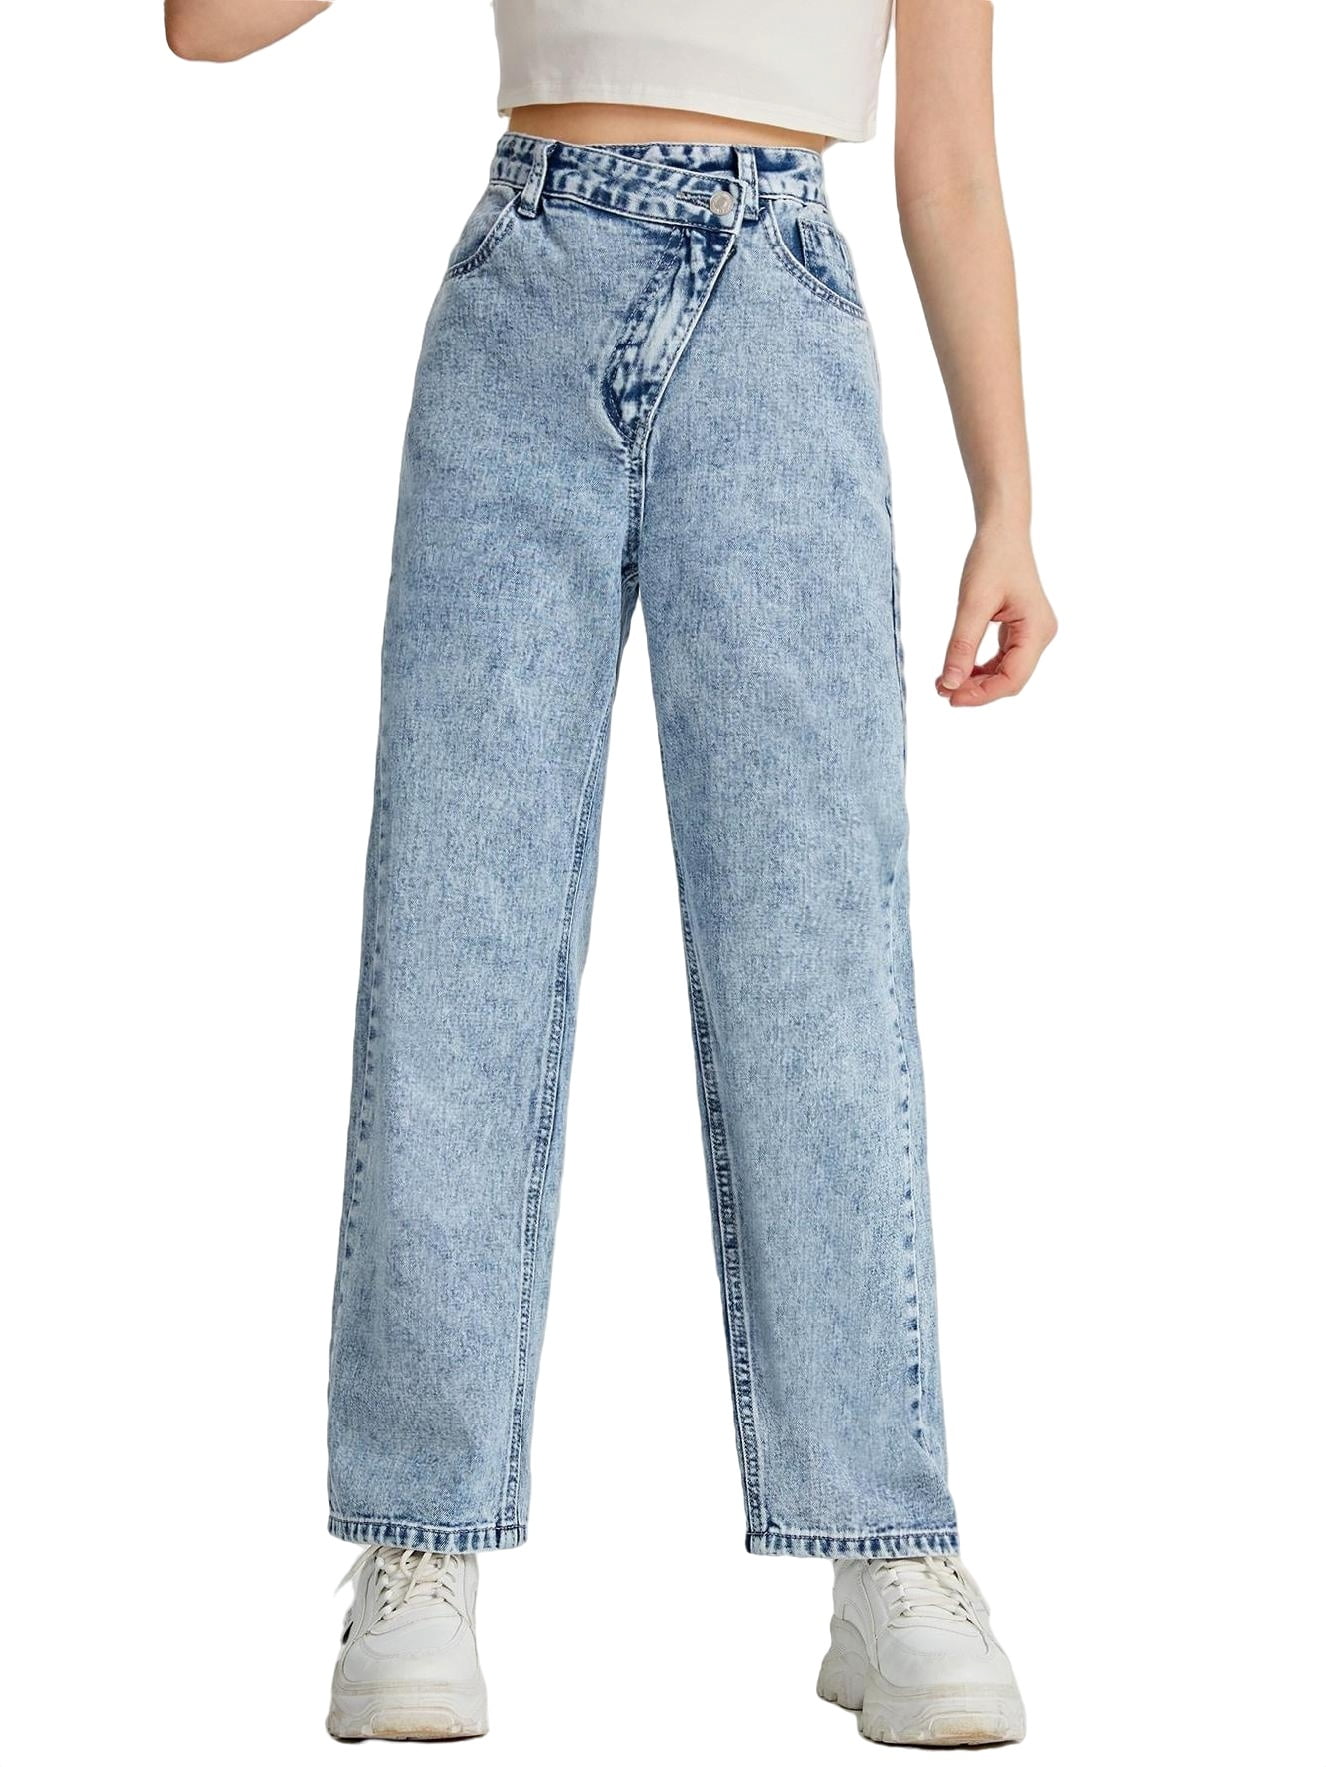 Plain Straight Leg Light Wash Girls Jeans (Girl's)